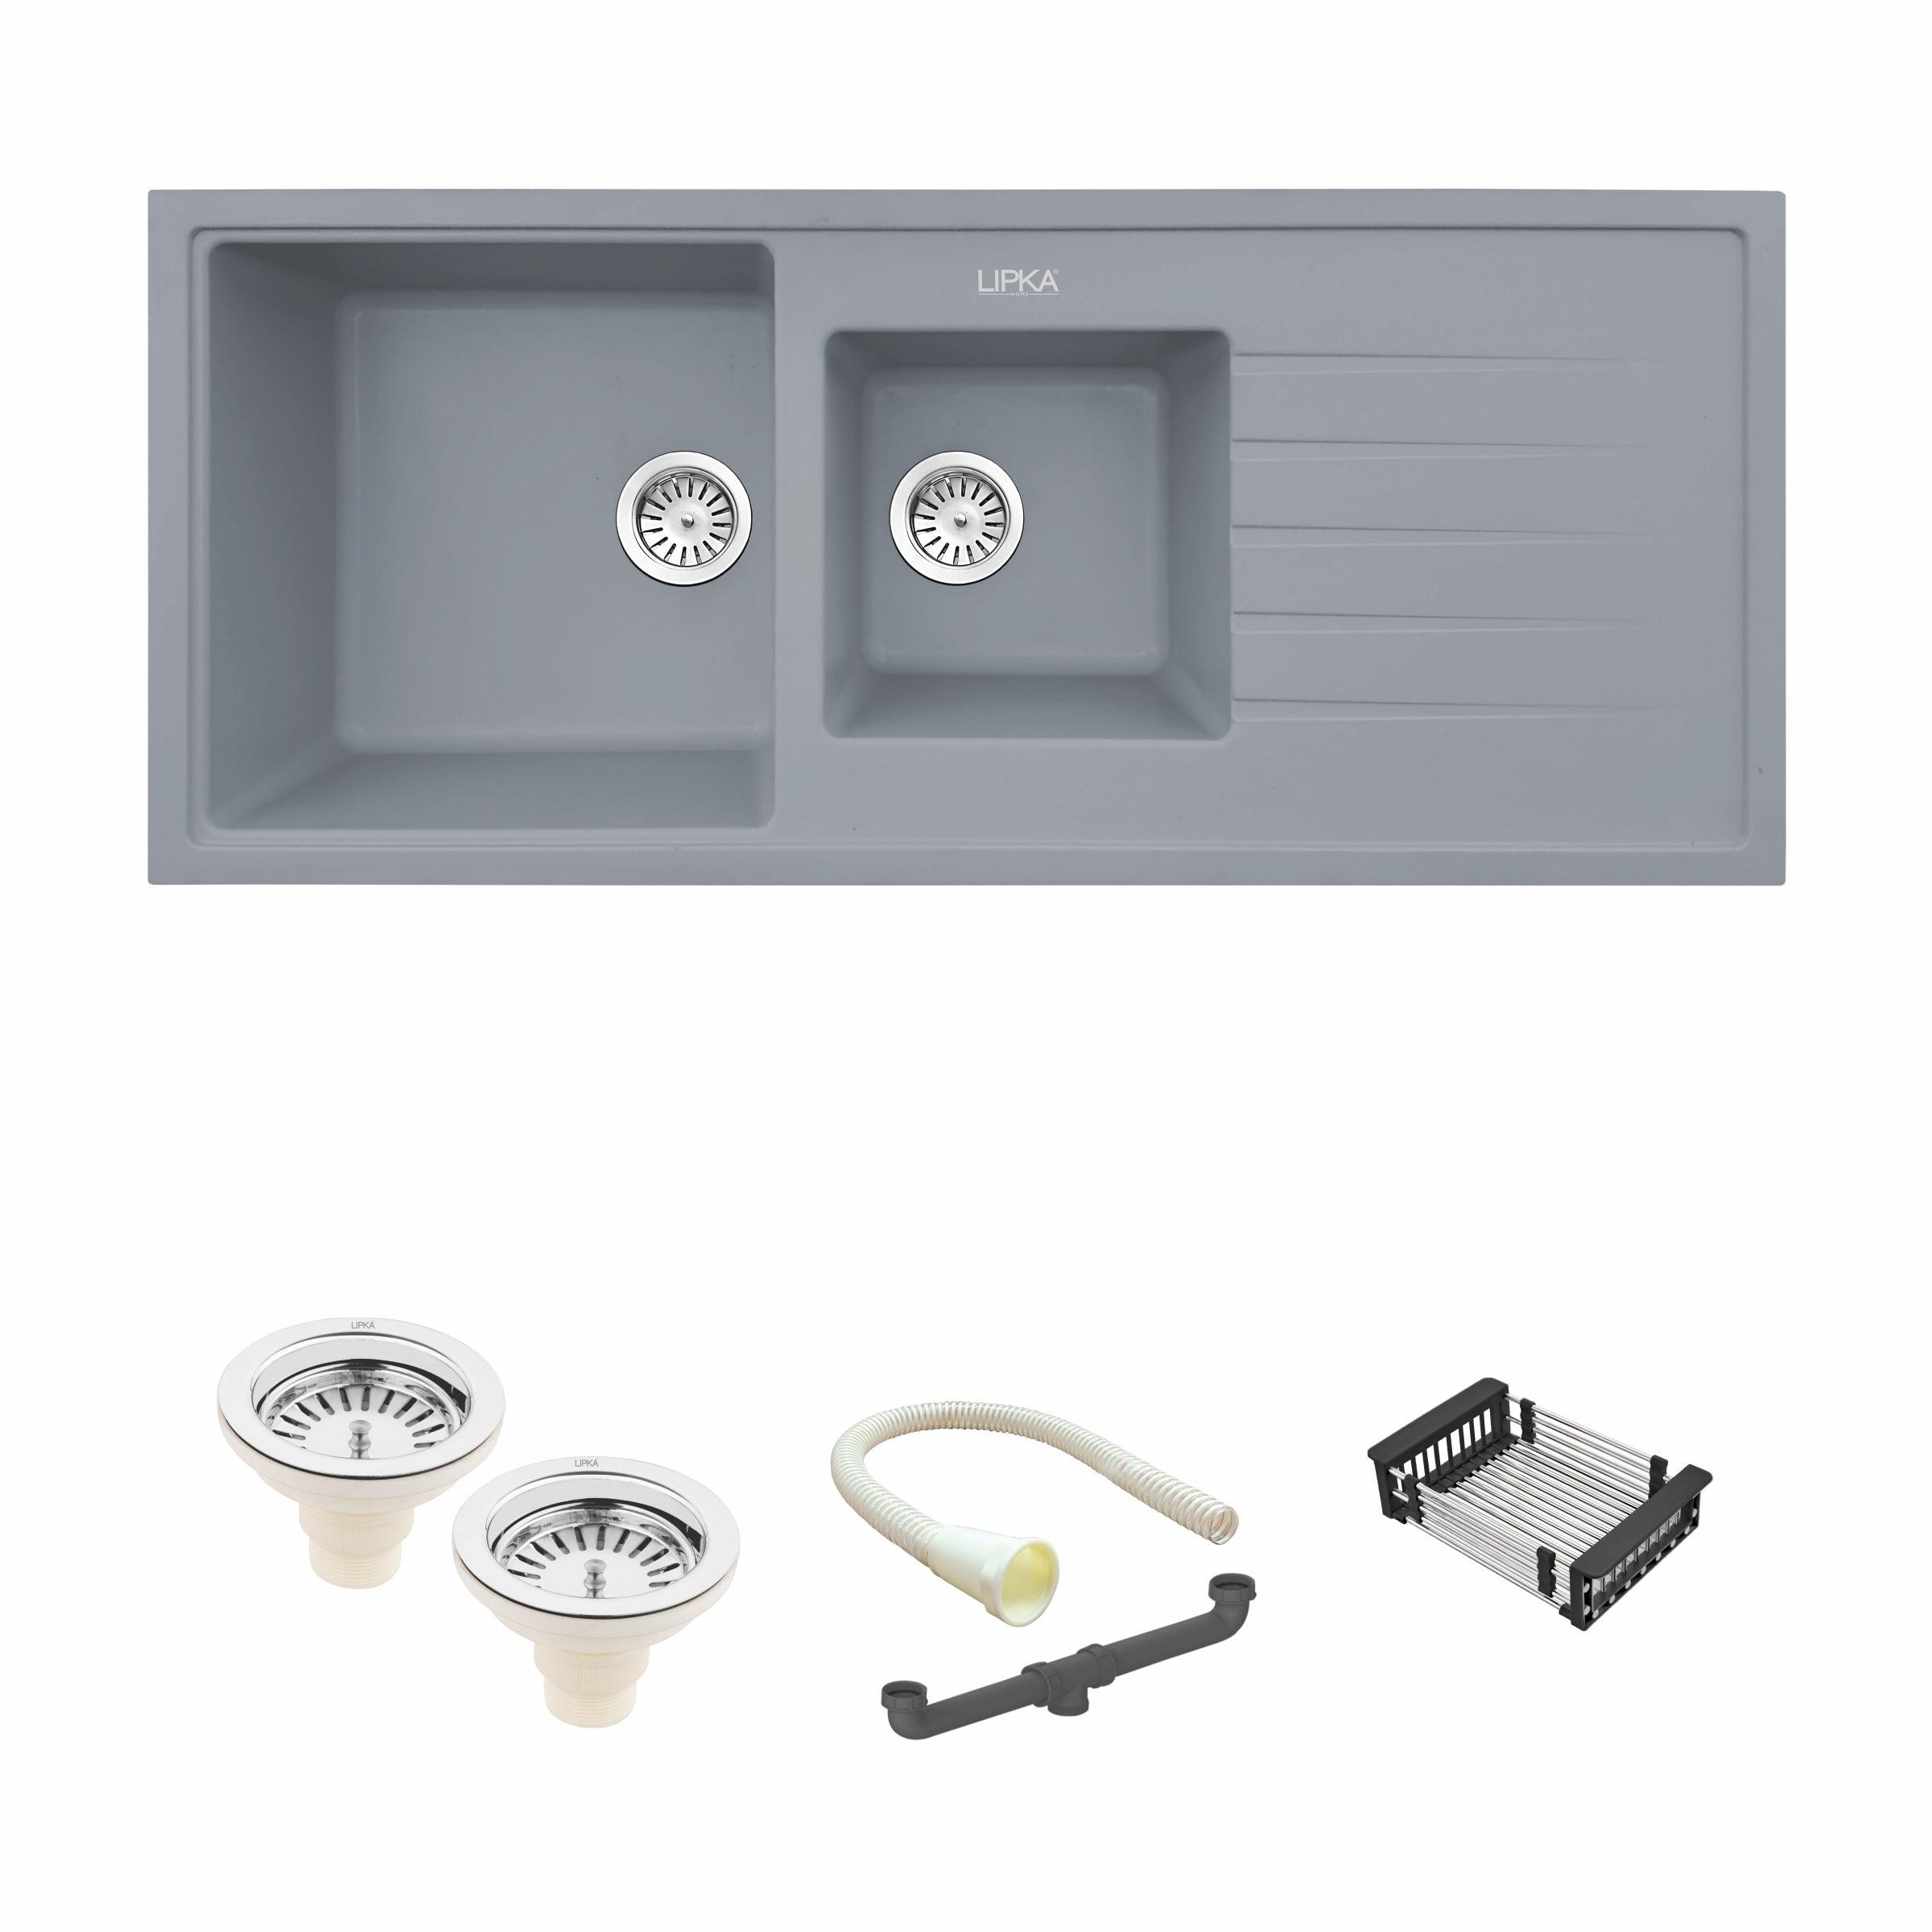 Smokey Grey Quartz Double Bowl with Drainboard Kitchen Sink (45 x 20 x 9 Inches) - LIPKA - Lipka Home